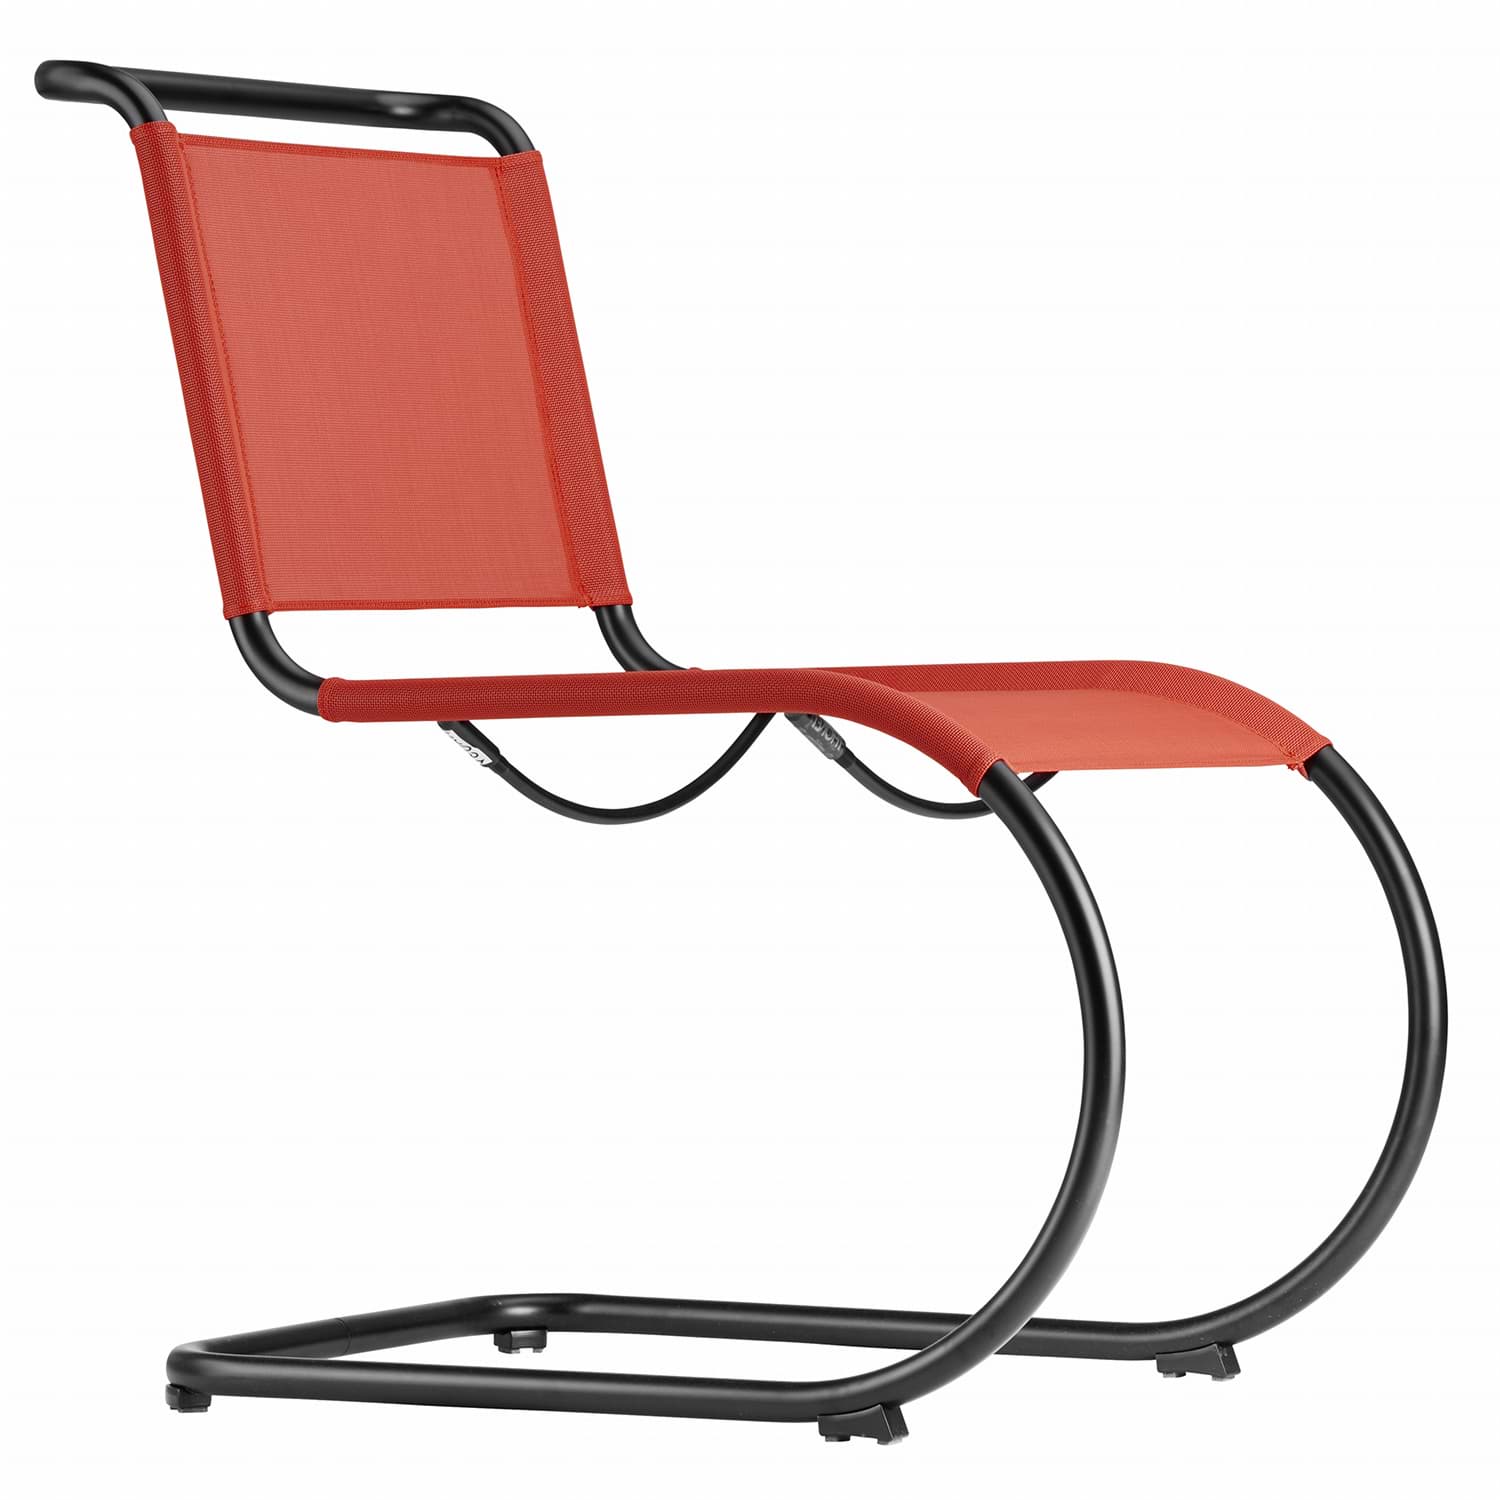 Mies van der Rohe konsol sandalye S 533 N resmi